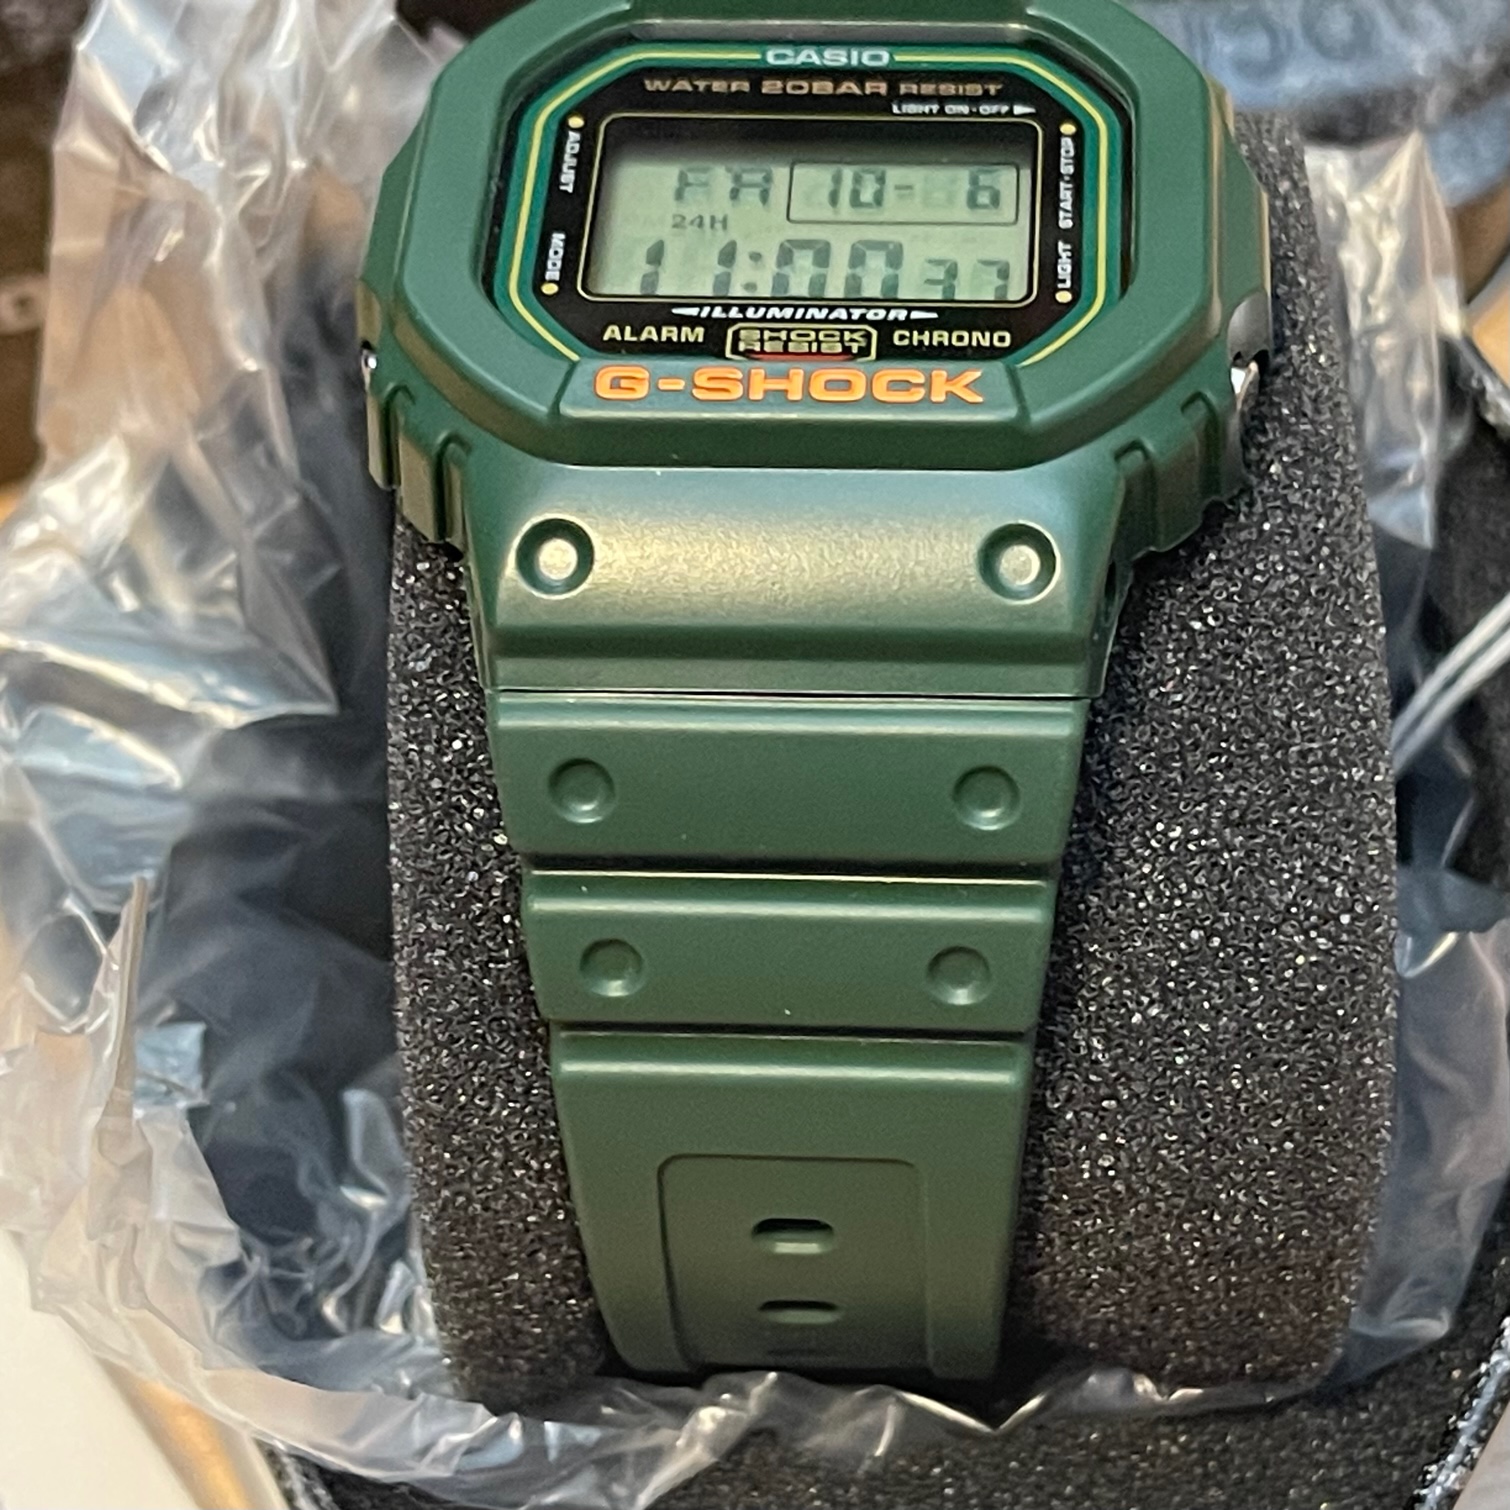 DW5600RB-3, Green Digital Watch - G-SHOCK